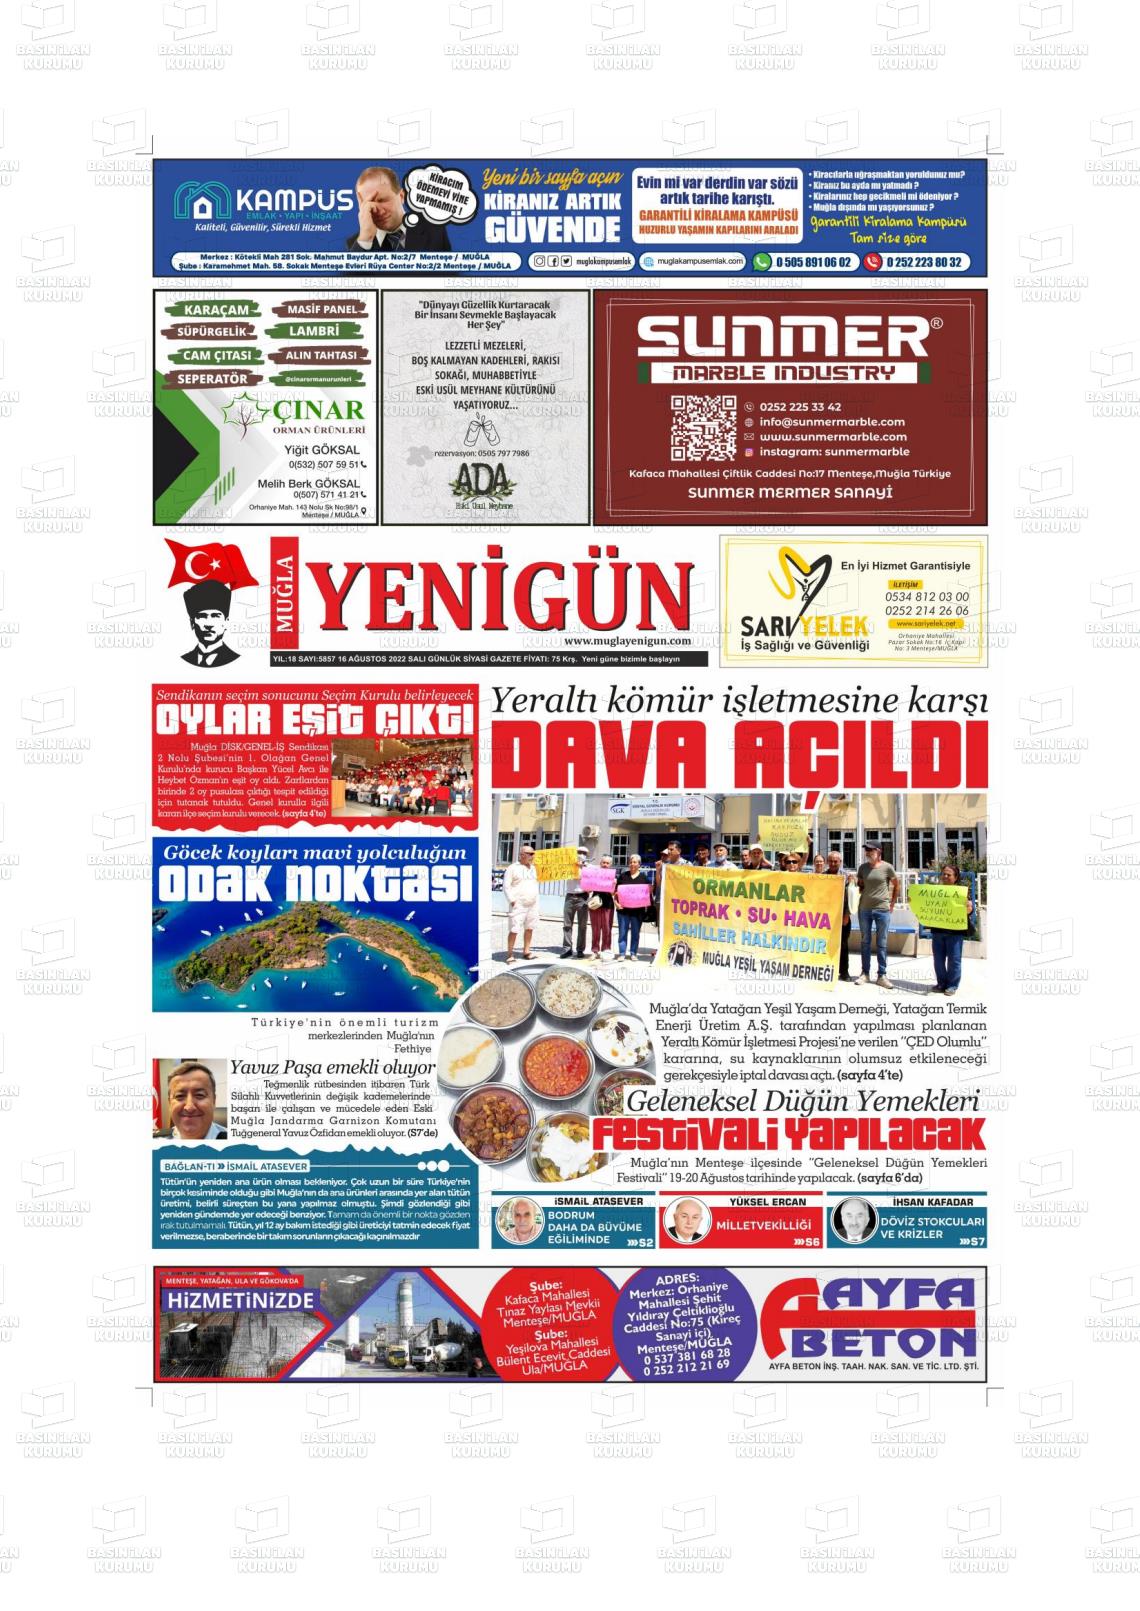 16 Ağustos 2022 Muğla Yenigün Gazete Manşeti